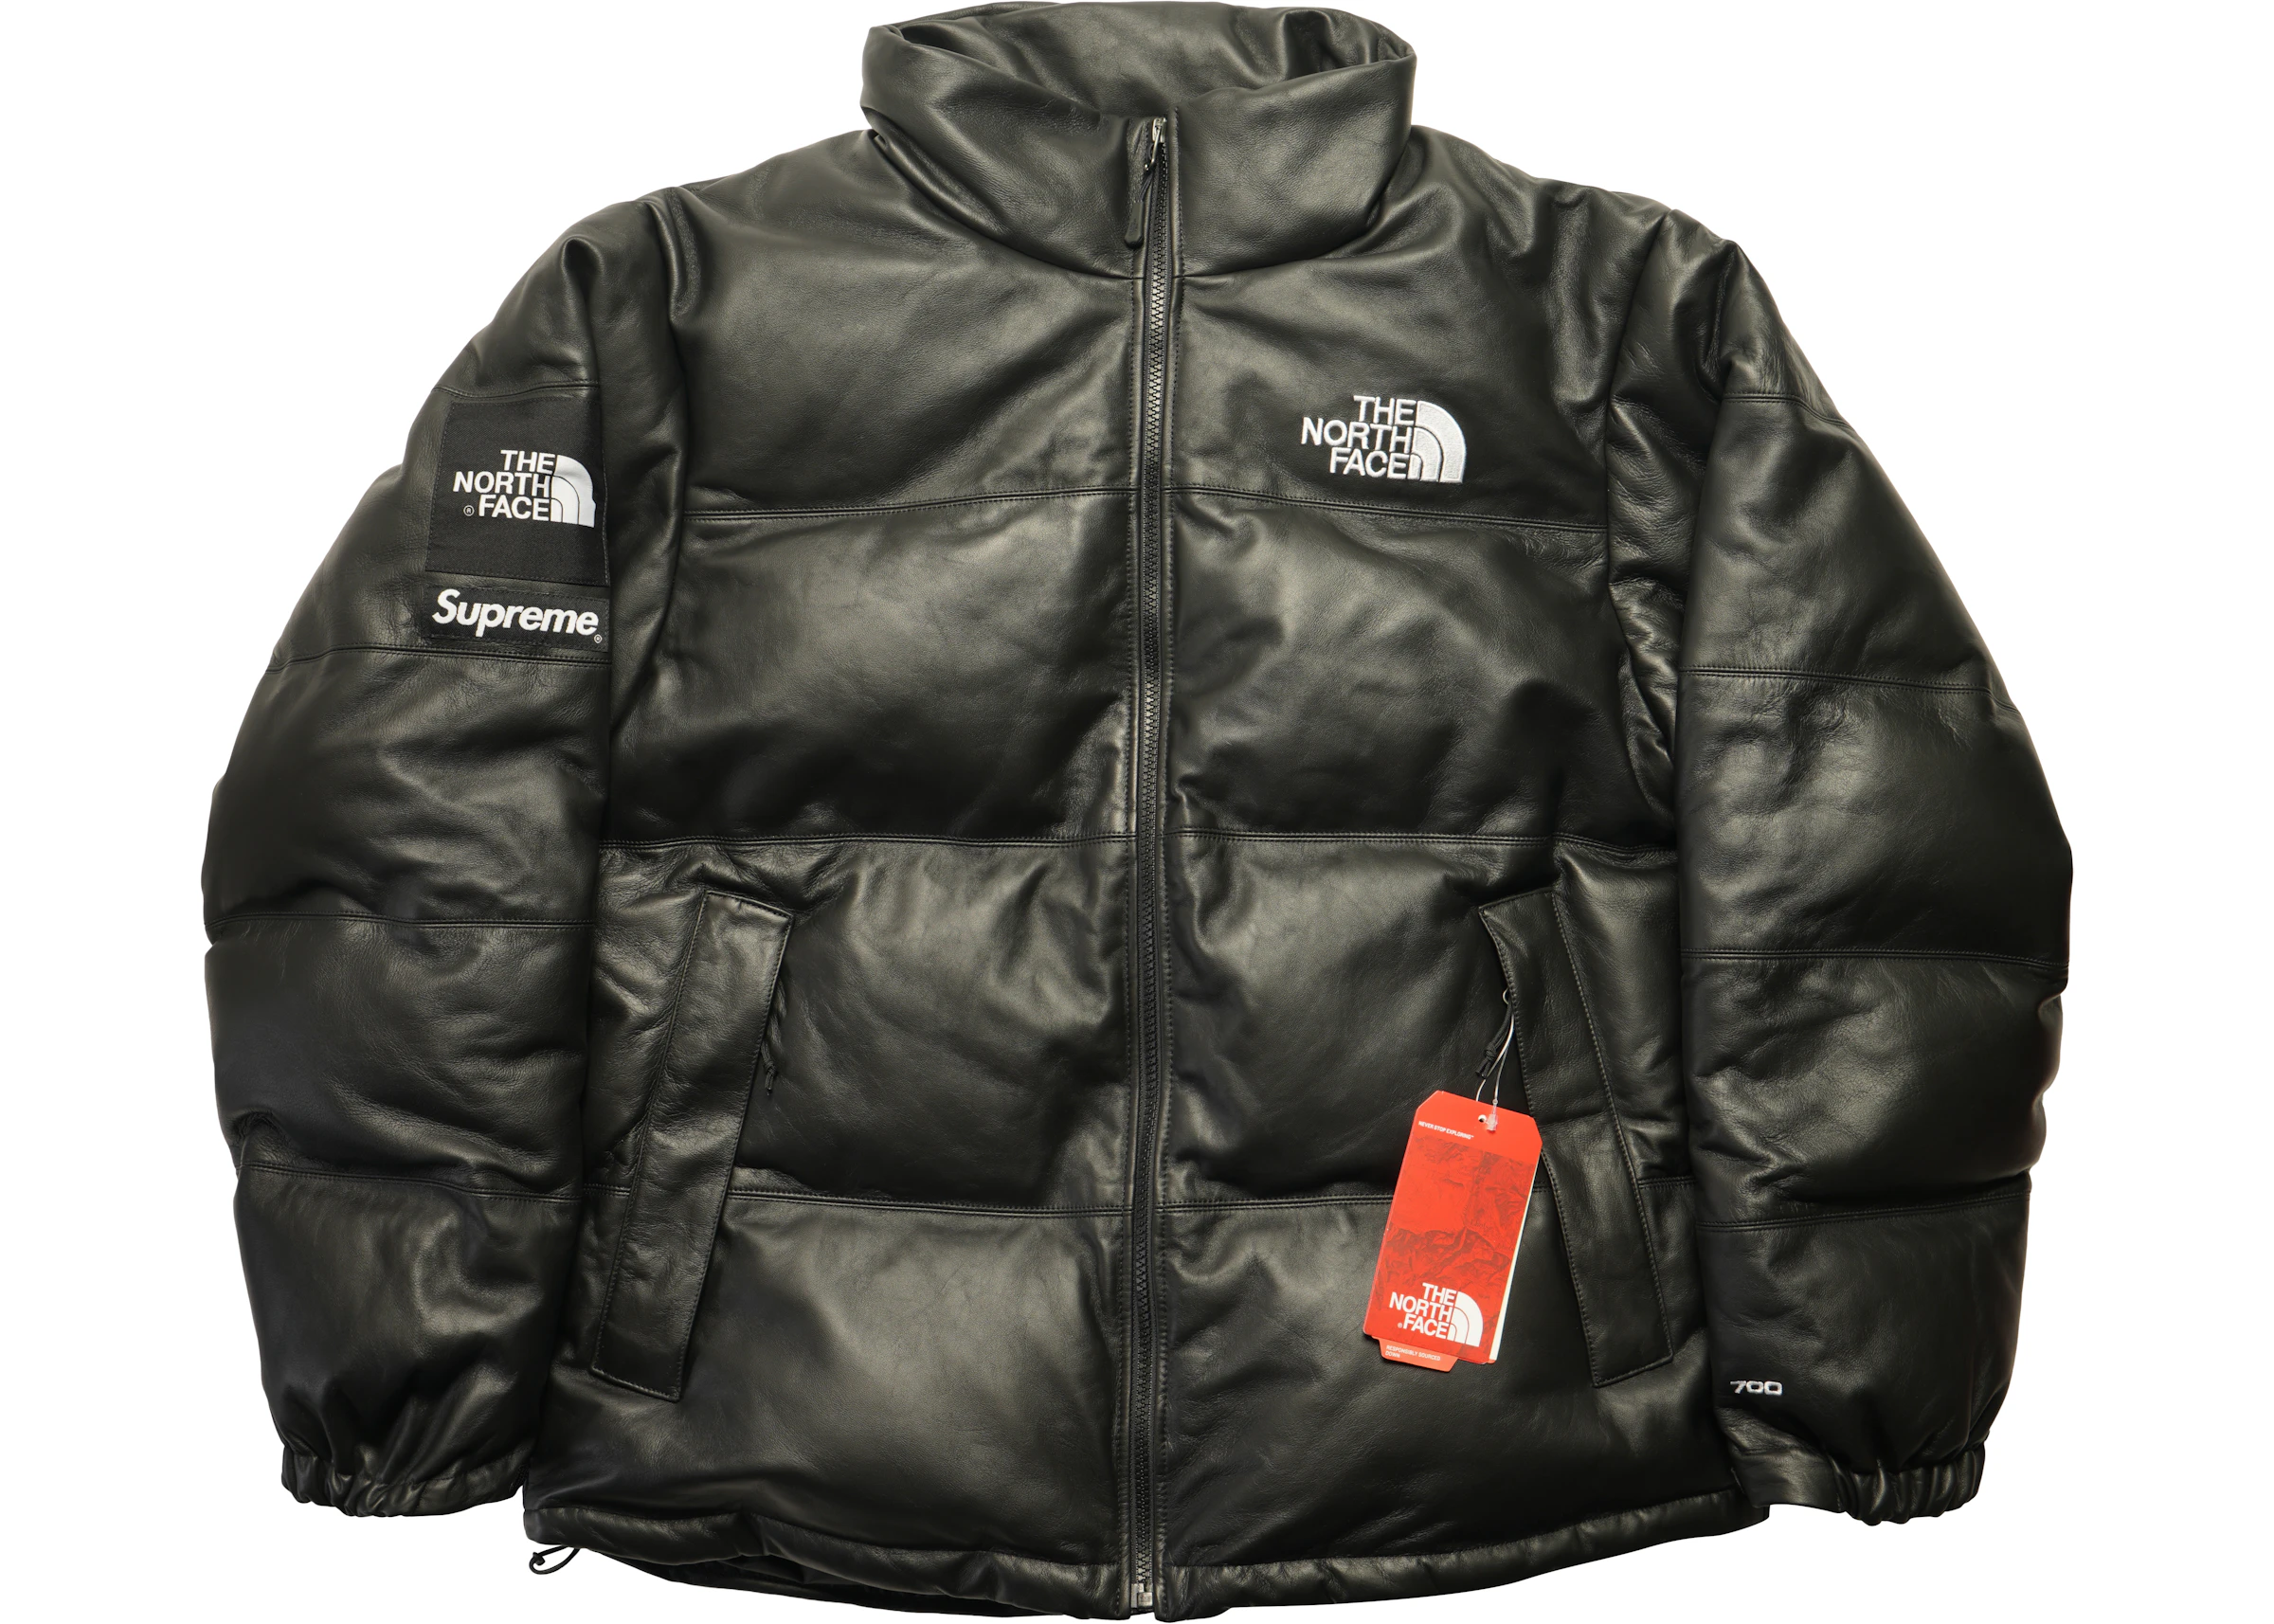 Inhalere klæde sig ud Kalkun Supreme The North Face Leather Nuptse Jacket Black - FW17 - US